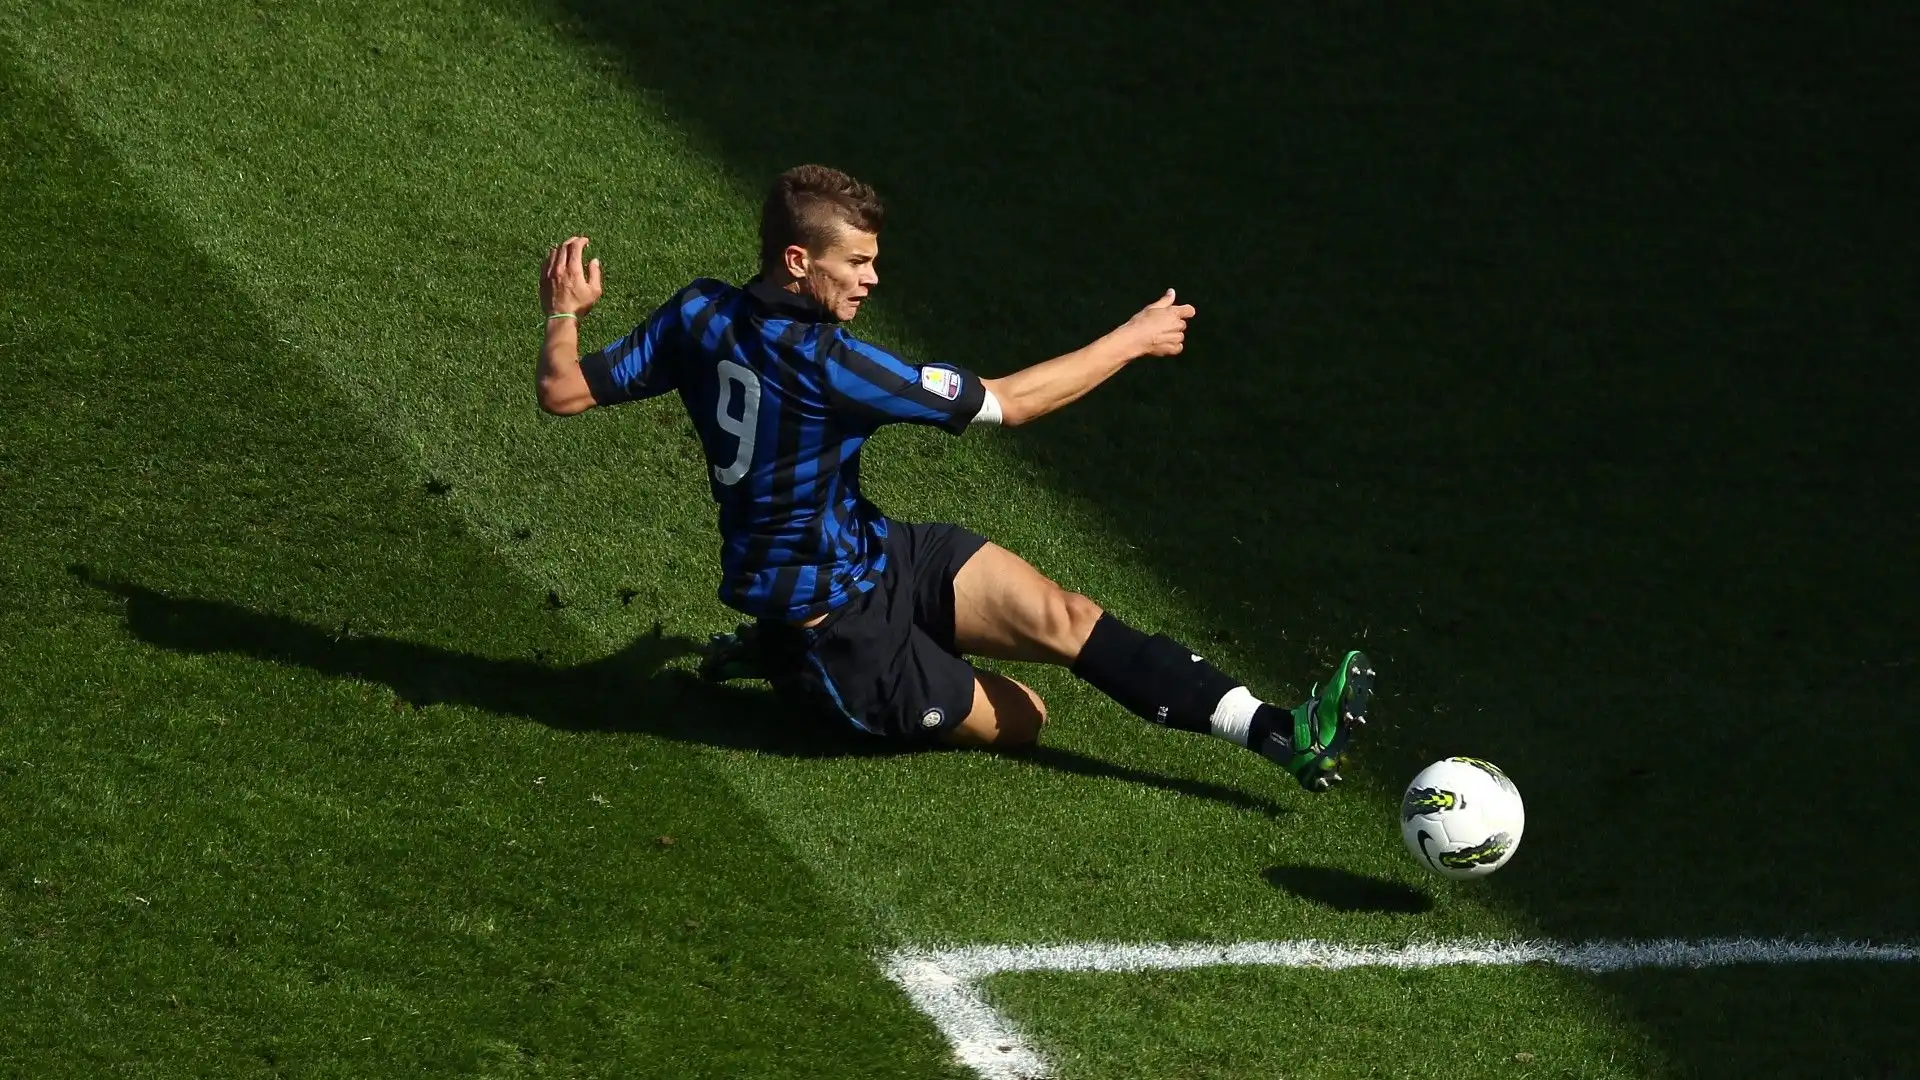 Centravanti con ottimo fiuto del gol, da ragazzino dava la sensazione di potersi ritagliare un posto importante nell'Inter